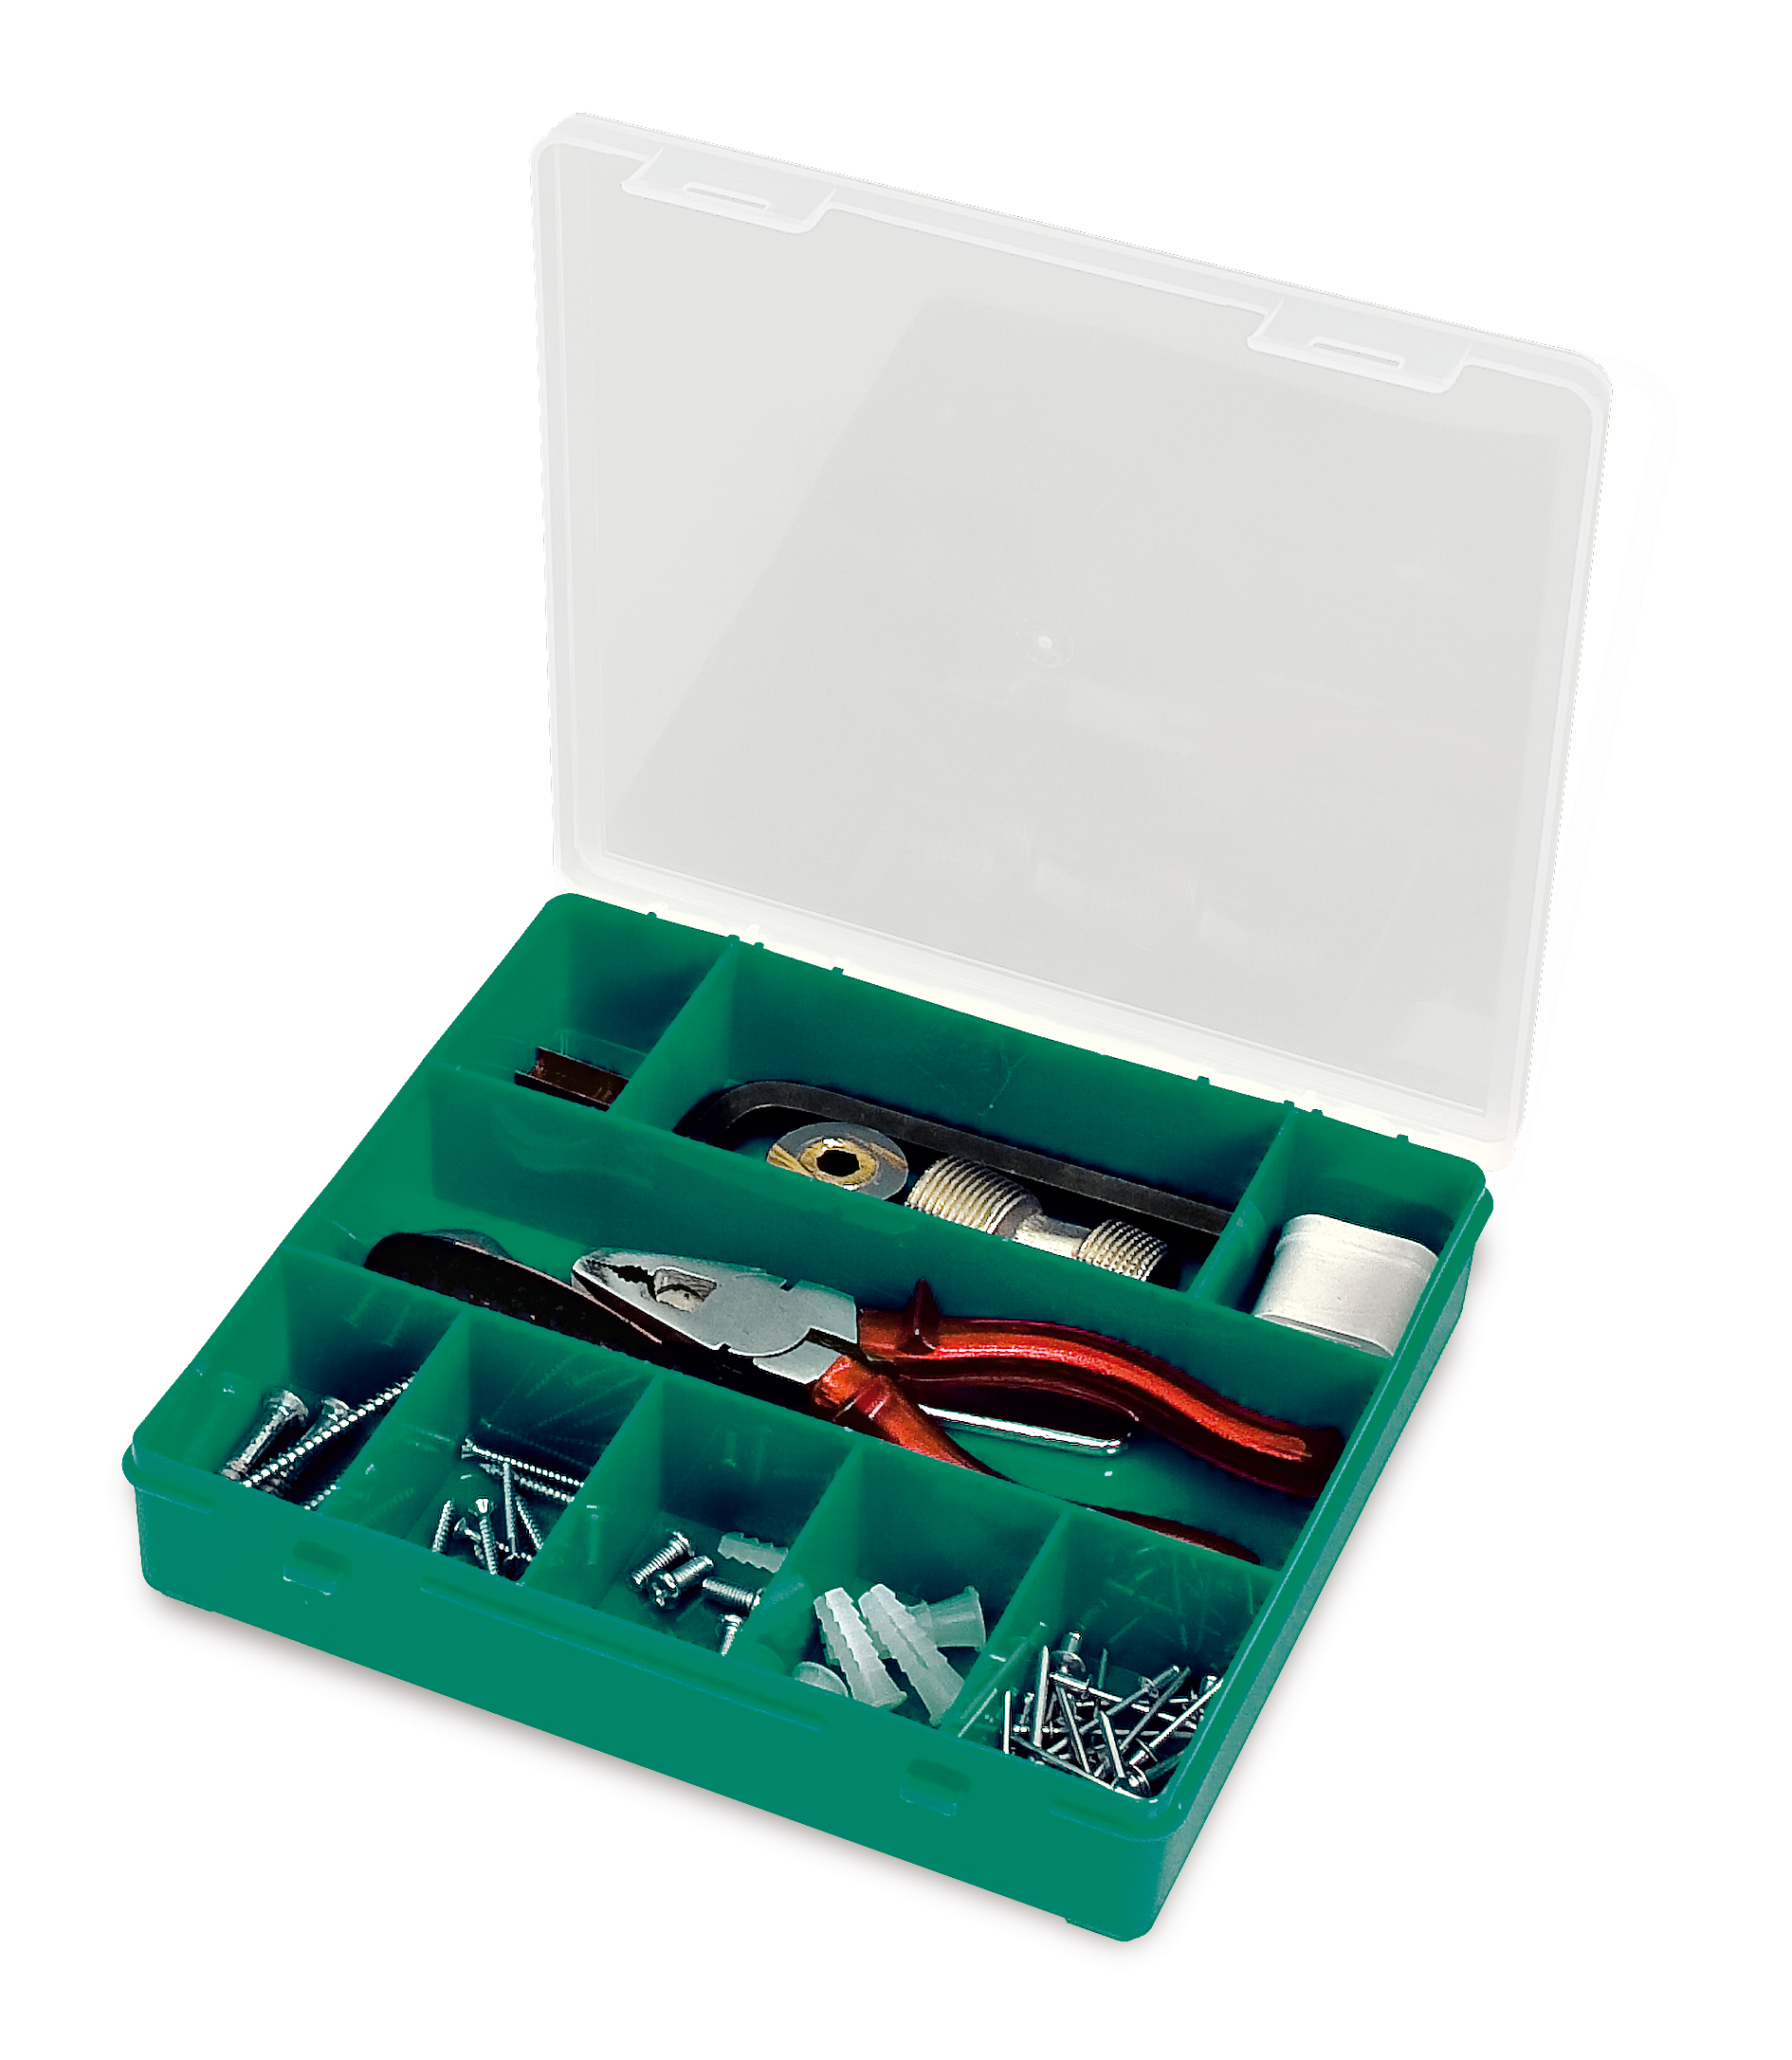 Органайзер Tayg Box 33-9 Estuche, для хранения мелких предметов, 21,5х20,7х4,2 см, зеленый (009006) - фото 1